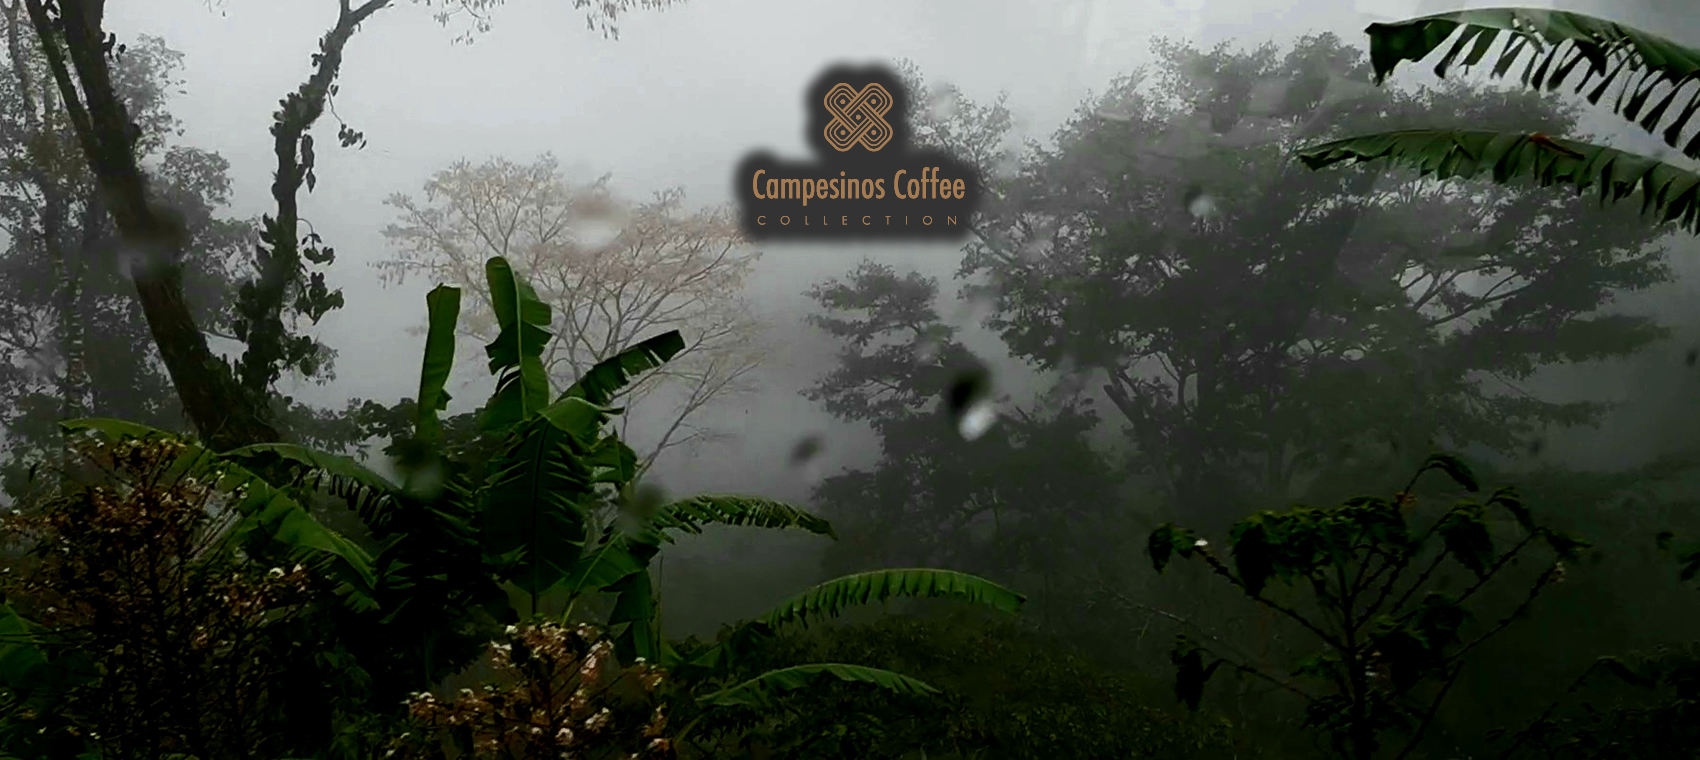 Campesinos coffee